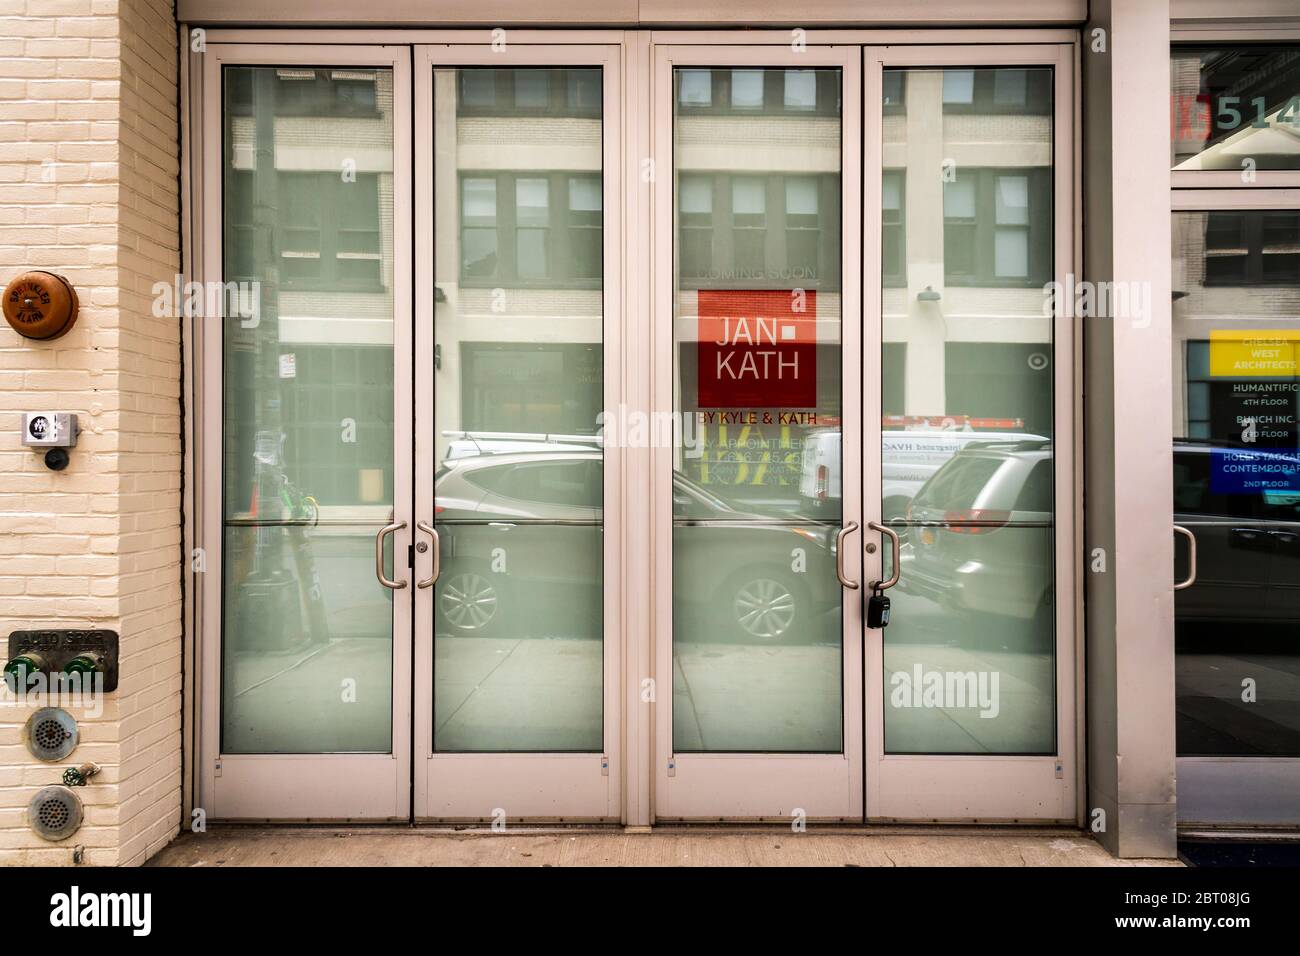 Chiuso il negozio di tappeti Kyle & Kath a causa della pandemia COVID-19 nel quartiere della galleria West Chelsea a New York venerdì 15 maggio 2020. (© Richard B. Levine) Foto Stock